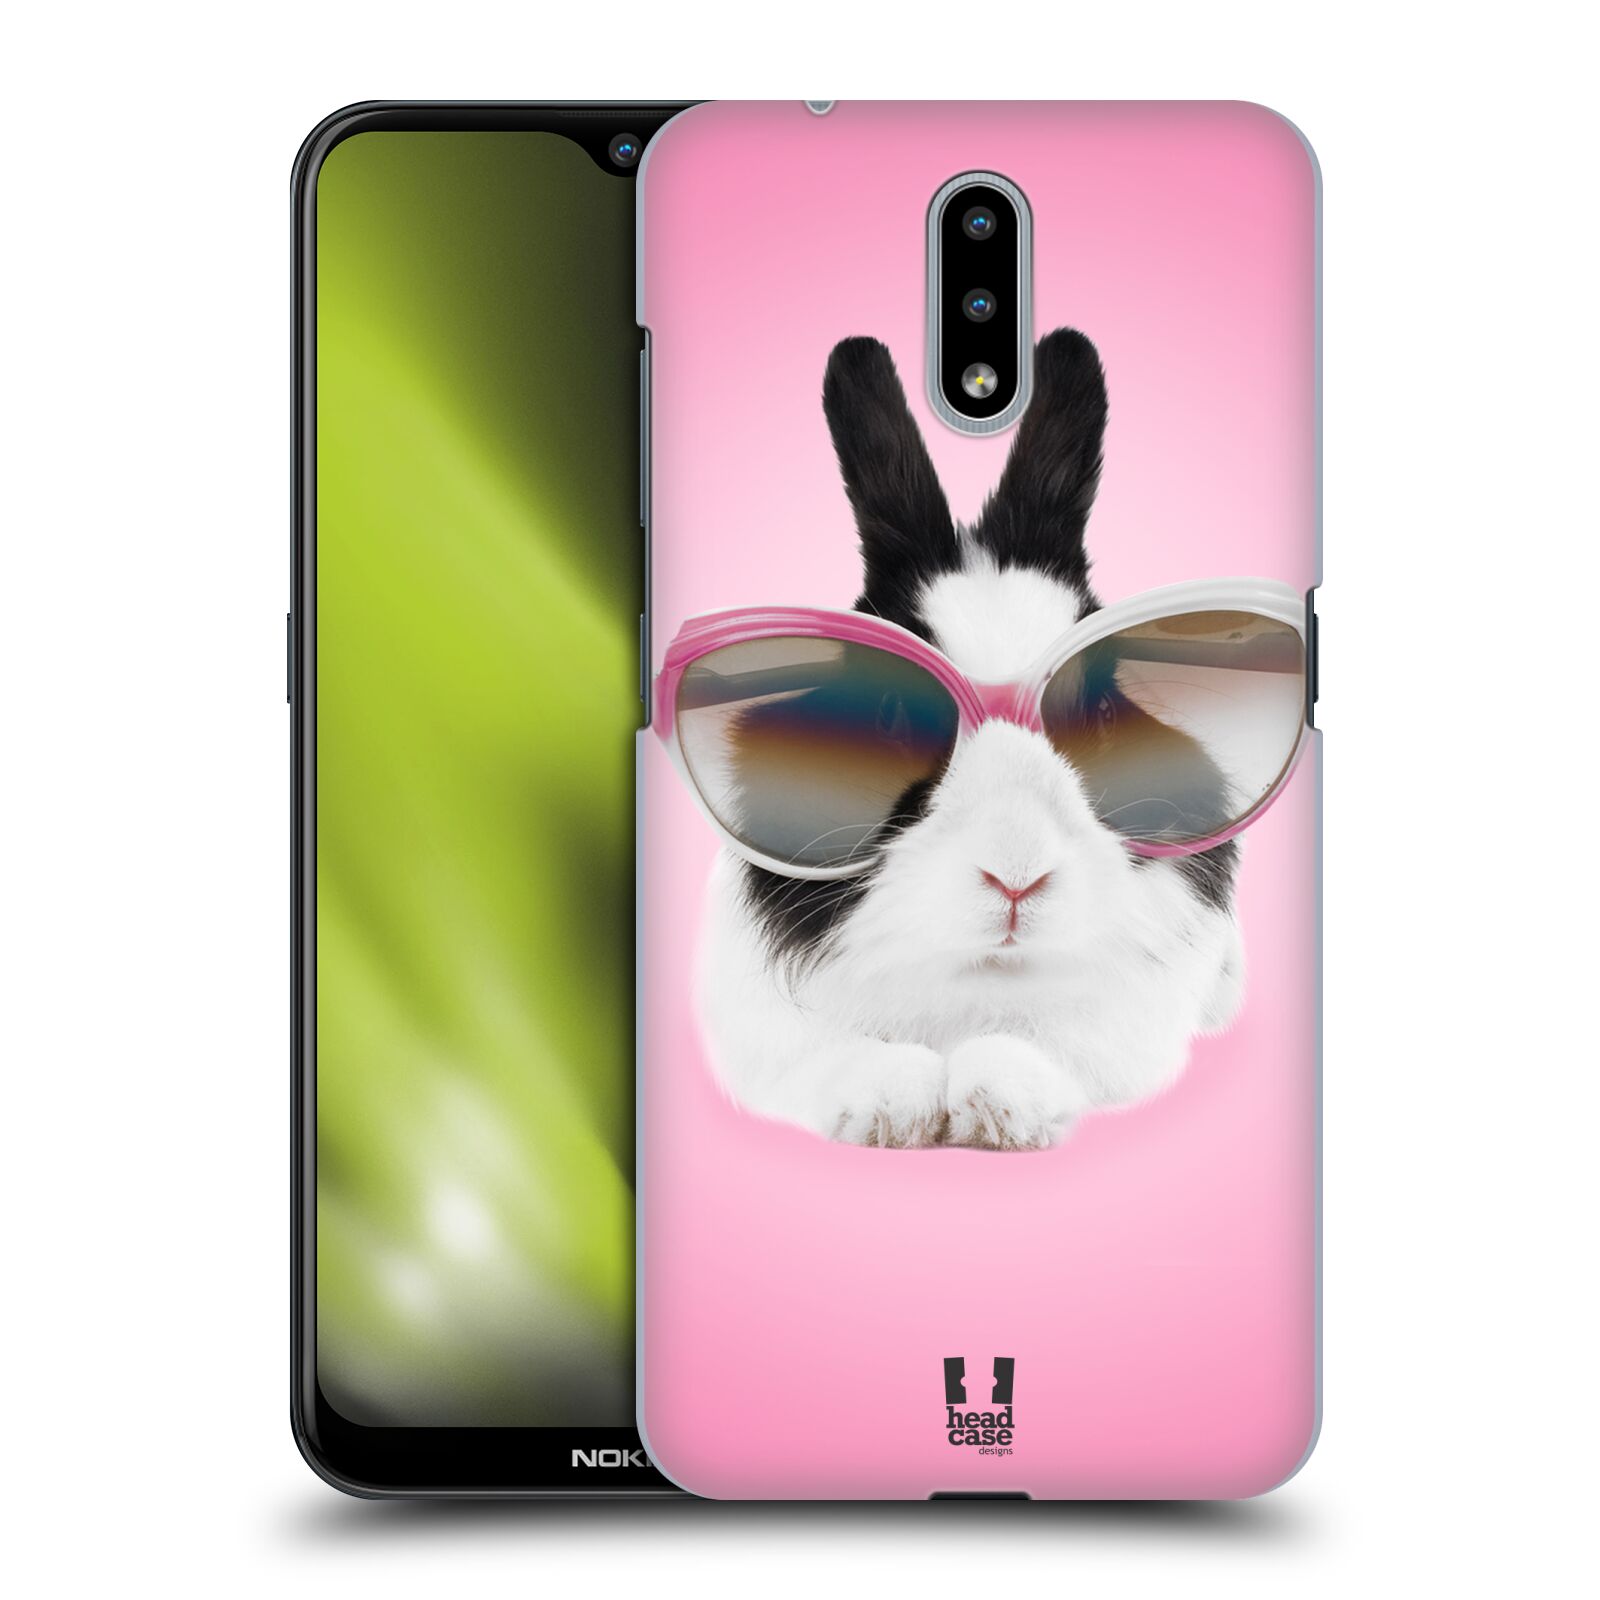 Plastový obal HEAD CASE na mobil Nokia 2.3 vzor Legrační zvířátka roztomilý králíček s brýlemi růžová